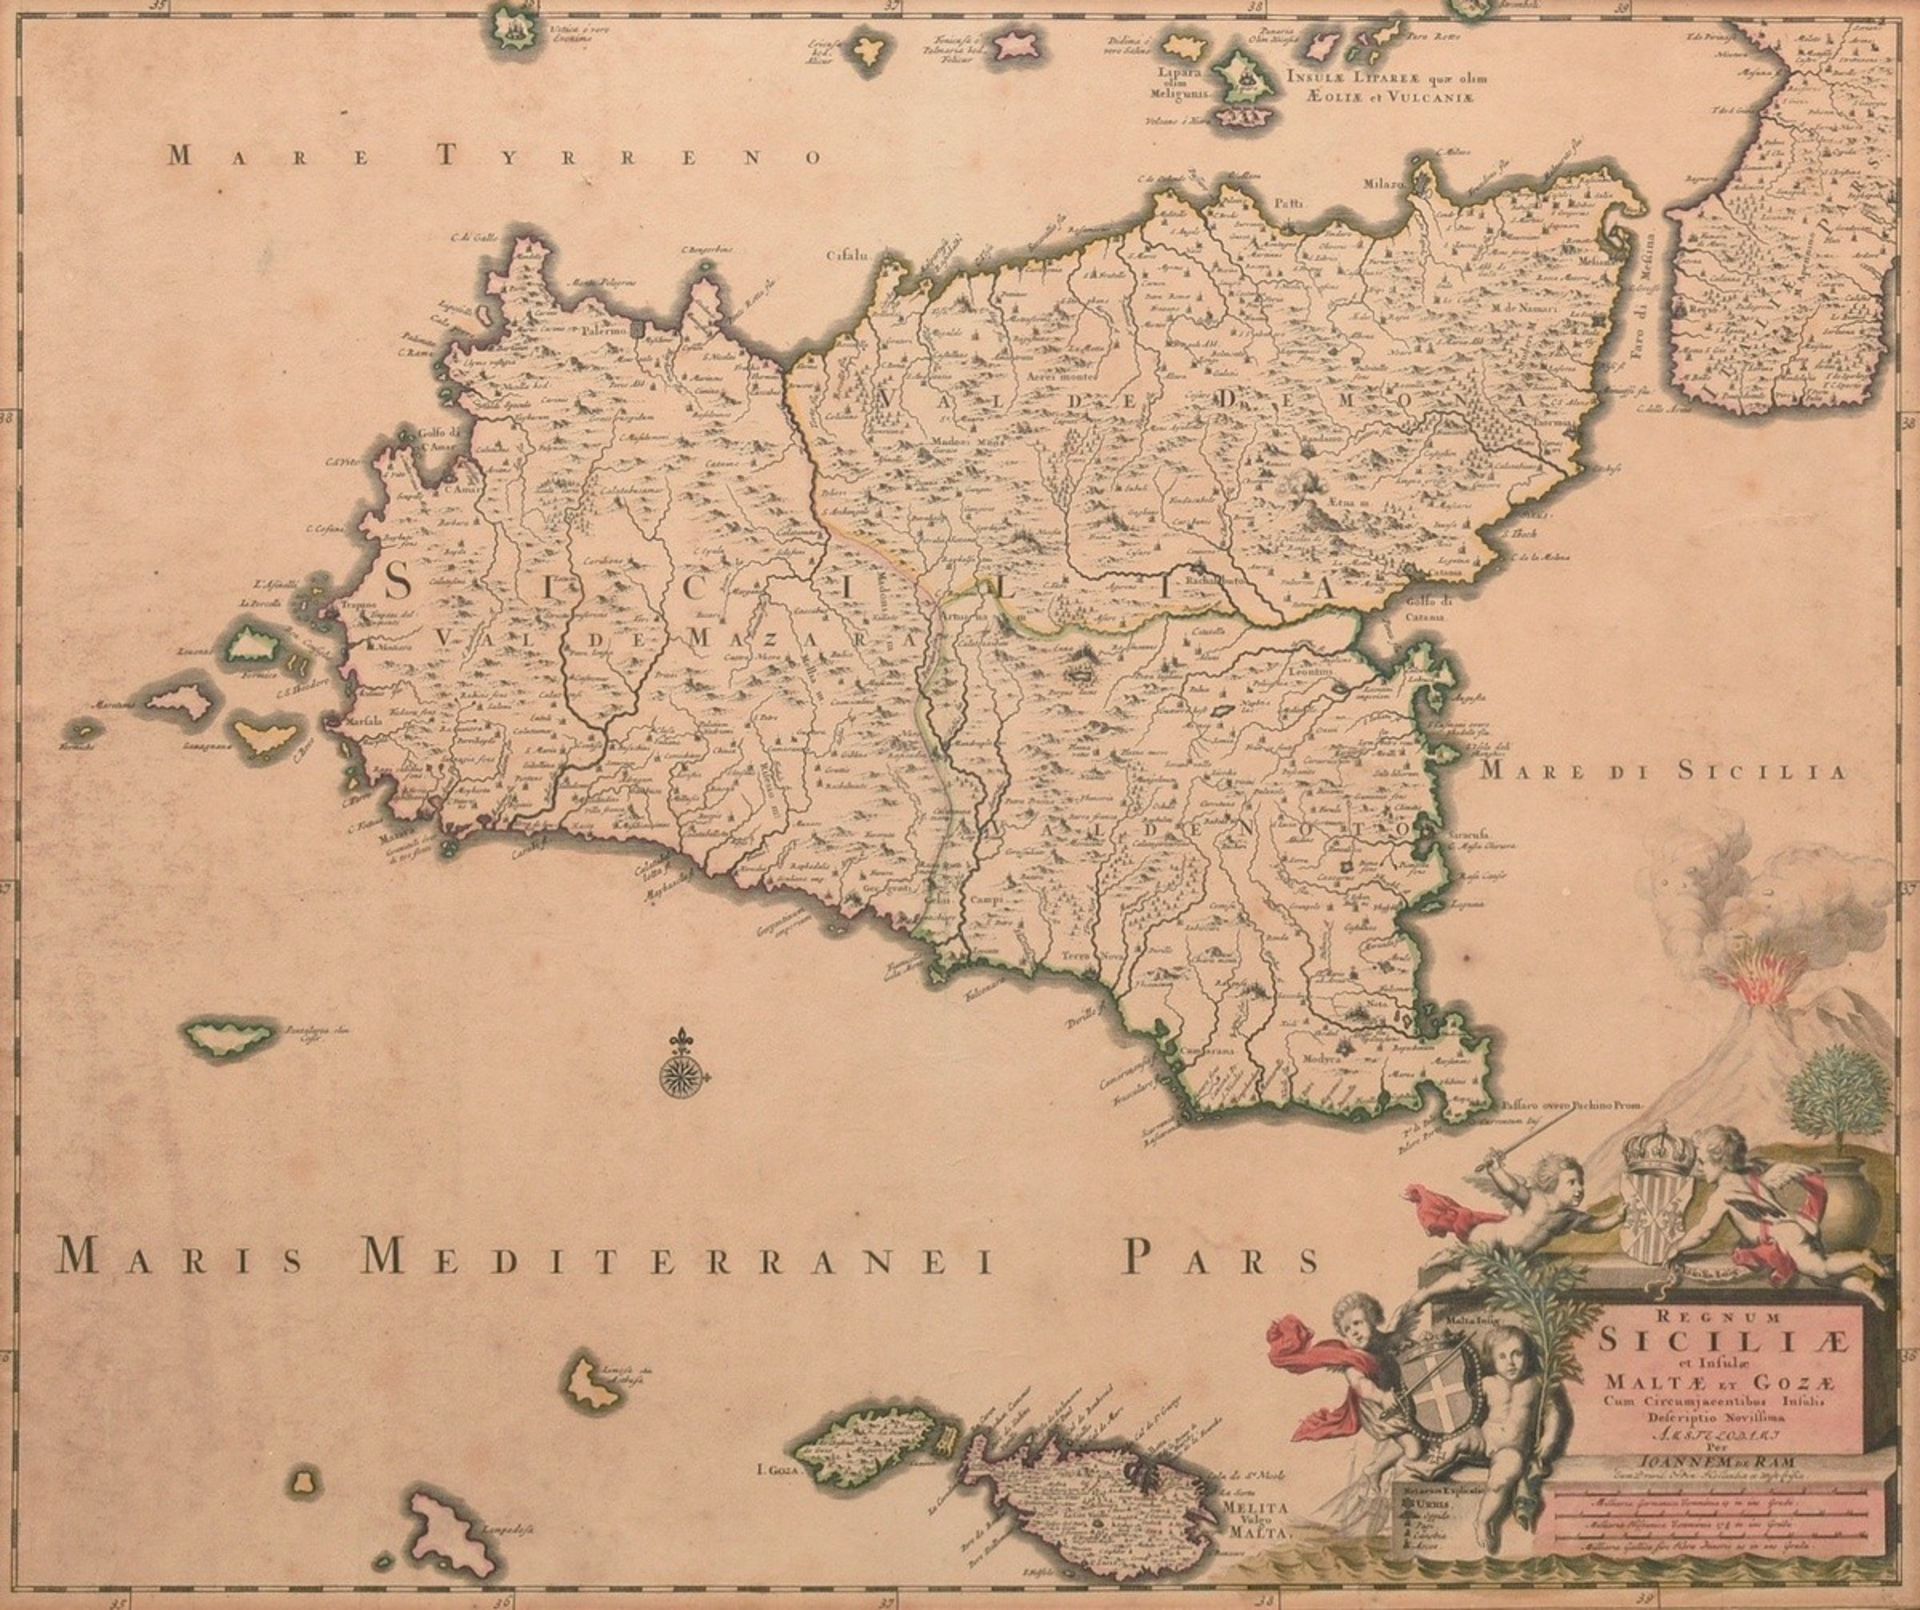 Ram, Johannes de (1648-1693) ‘Regnum Siciliae et Insulae Maltae et Gozae...’ (Sicily with Malta and